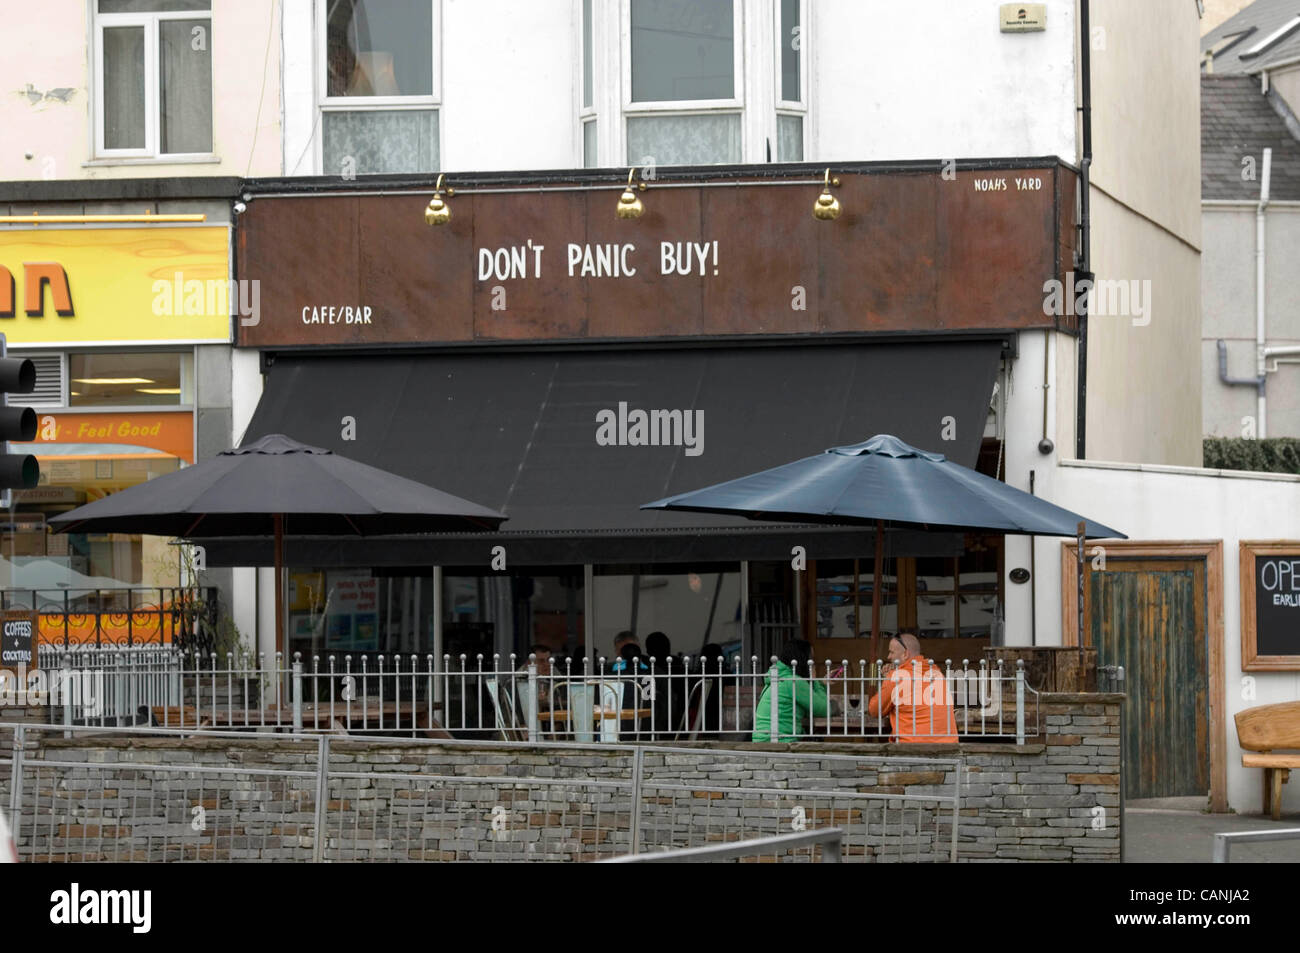 Swansea, Reino Unido. 31 Mar, 2012. Signo de arriba Noah's Patio bar en las tierras altas del distrito de Swansea diciendo "se asuste comprar', en referencia a la crisis del combustible. Foto de stock